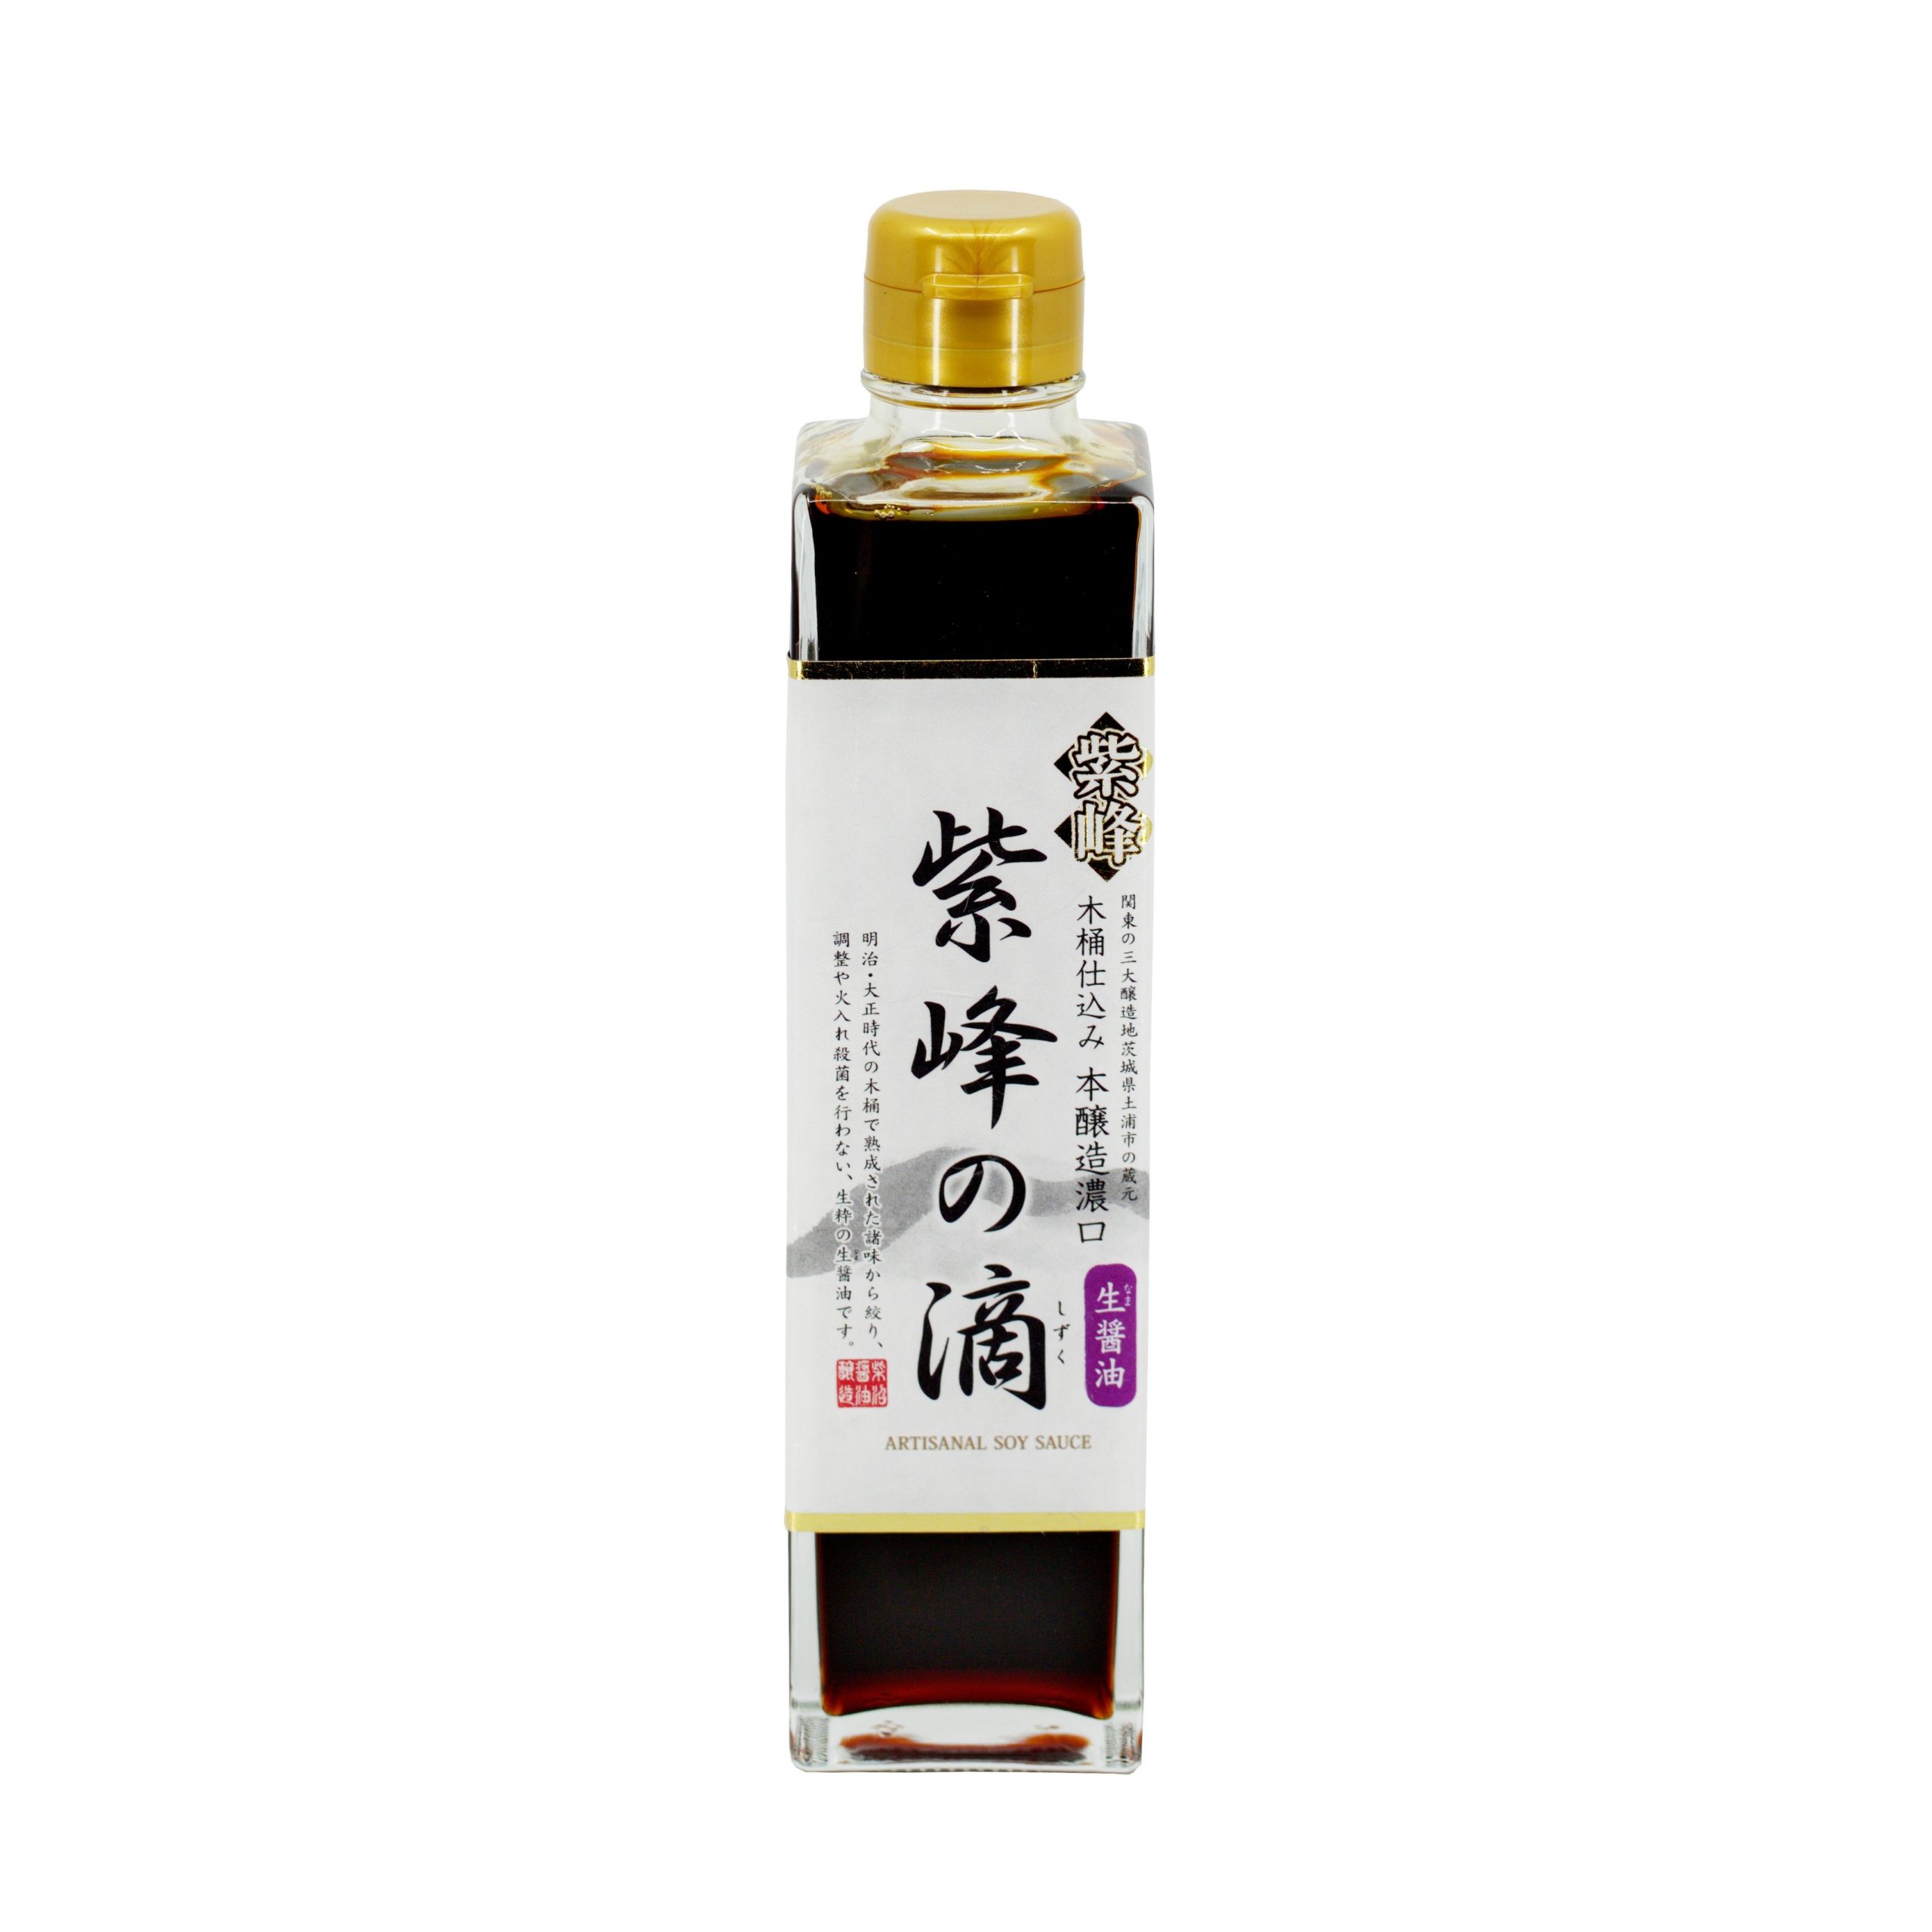 Shibanuma soy sauce 300ml